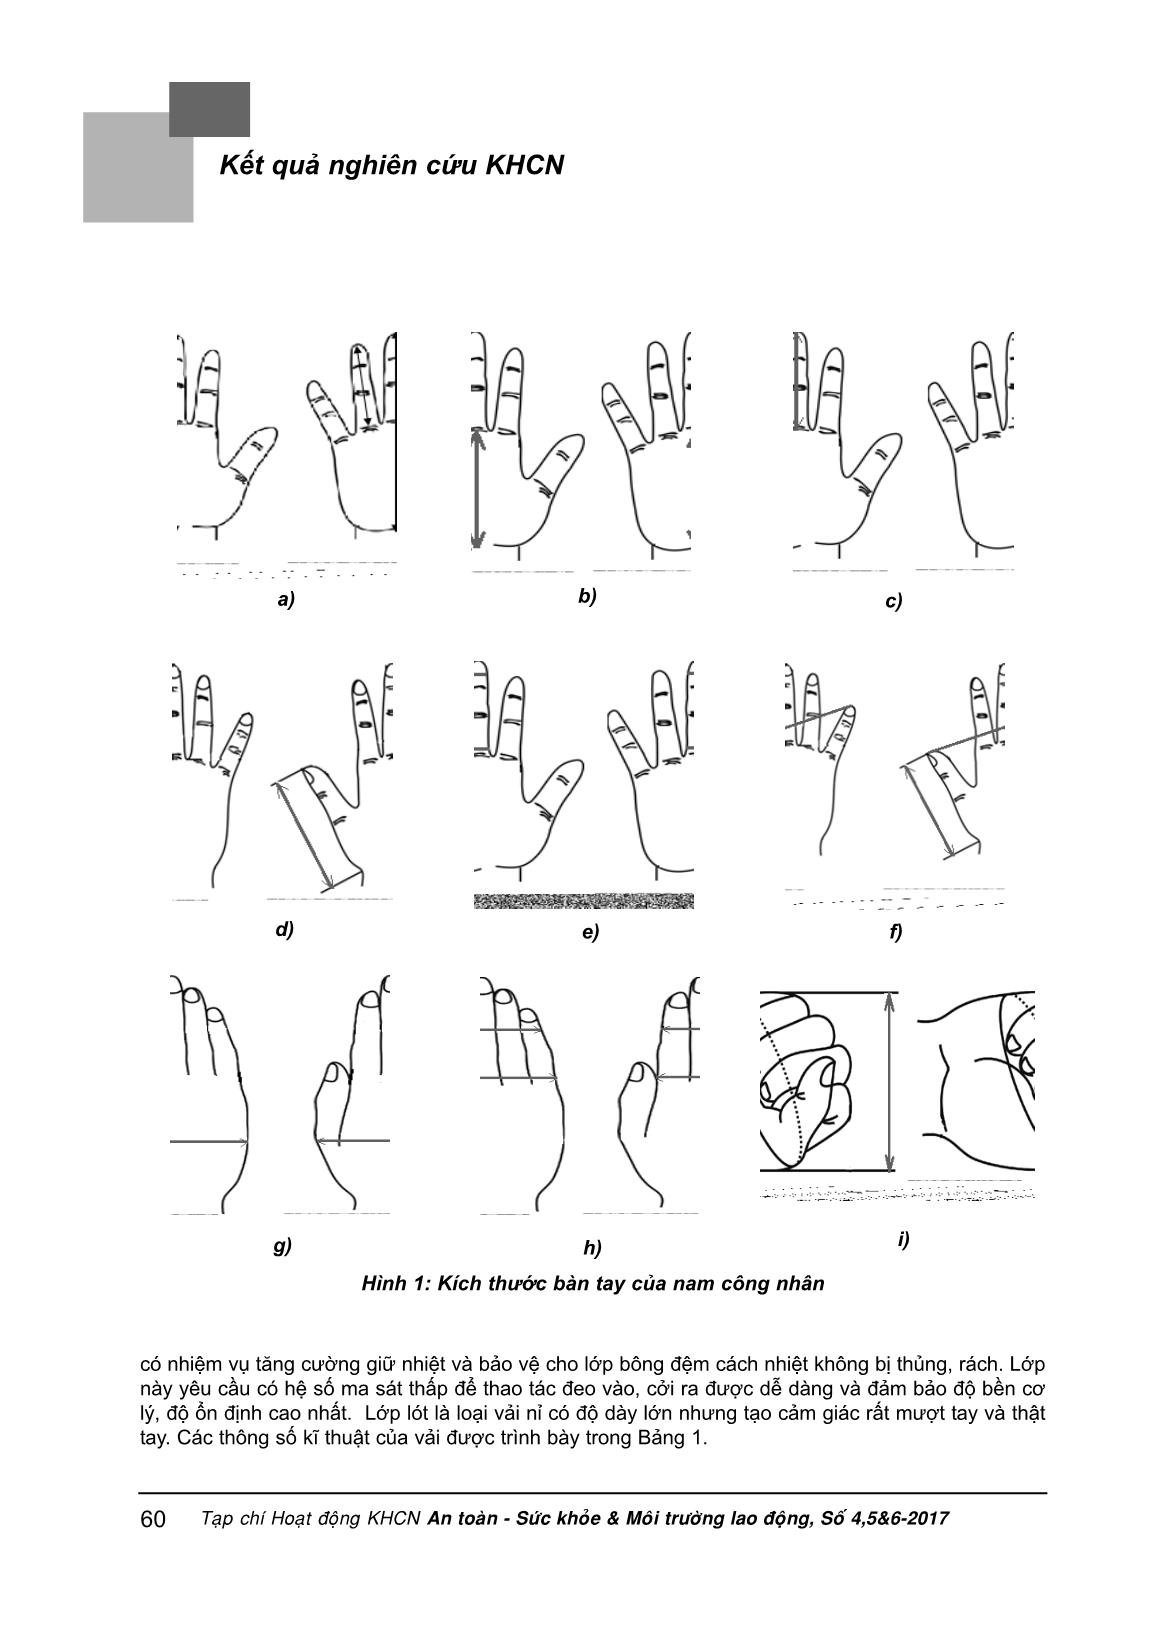 Xây dựng hệ công thức thiết kế găng tay bảo vệ sử dụng trong môi trường Nito hóa lỏng trang 3